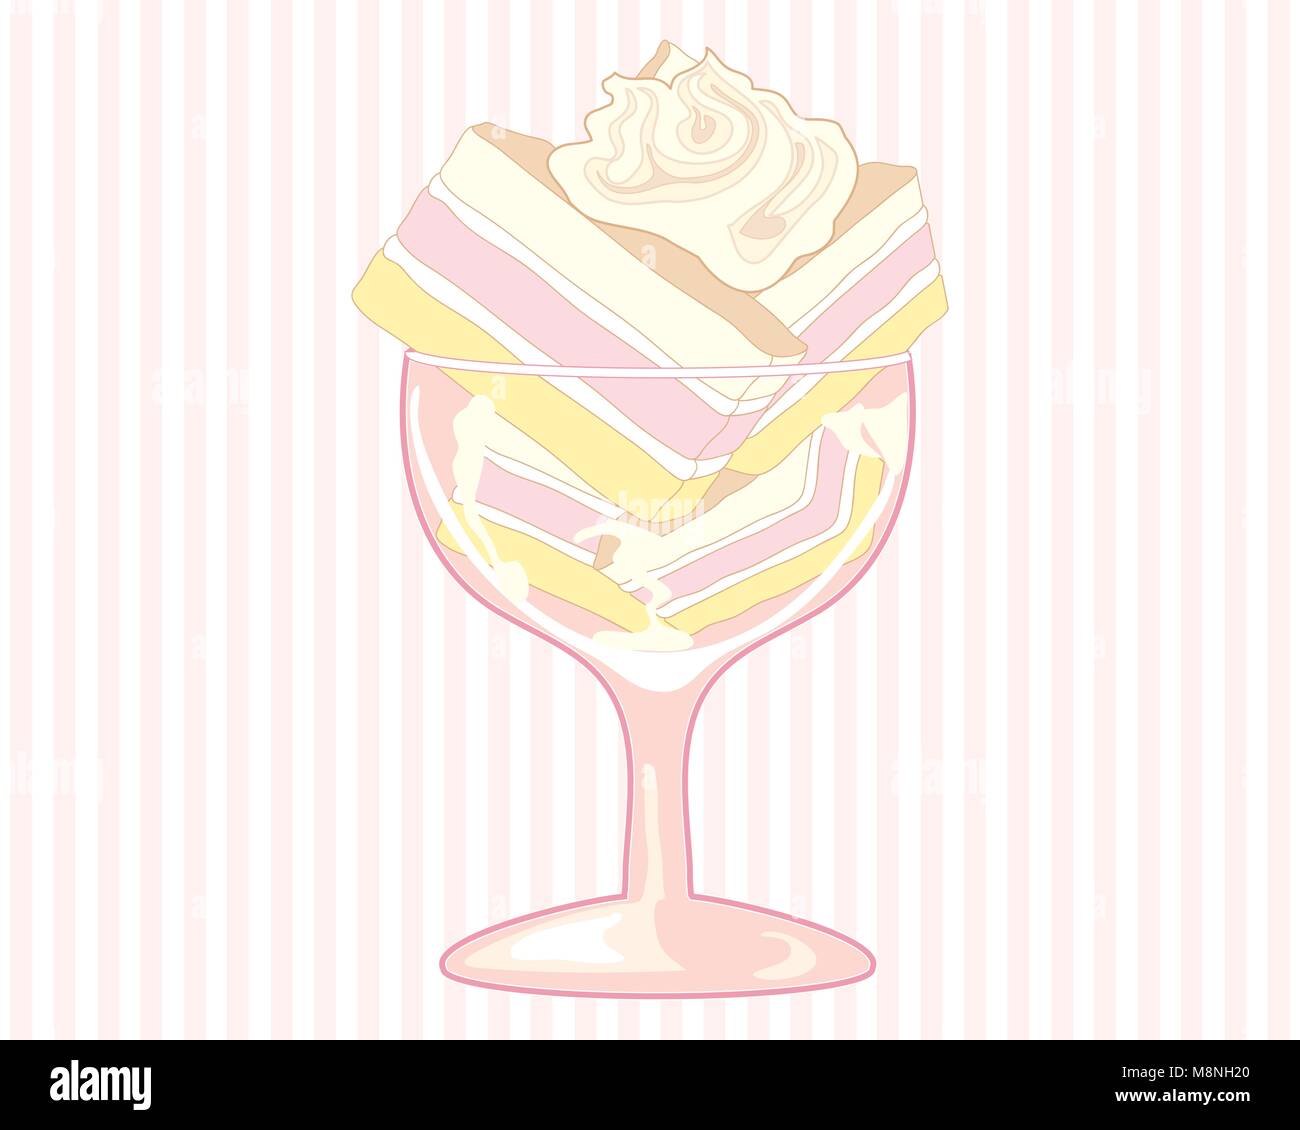 Un vecteur illustration au format eps d'une fantaisie verre avec angel cake empilé avec un tourbillon de crème fouettée sur un fond de rayure rose Illustration de Vecteur